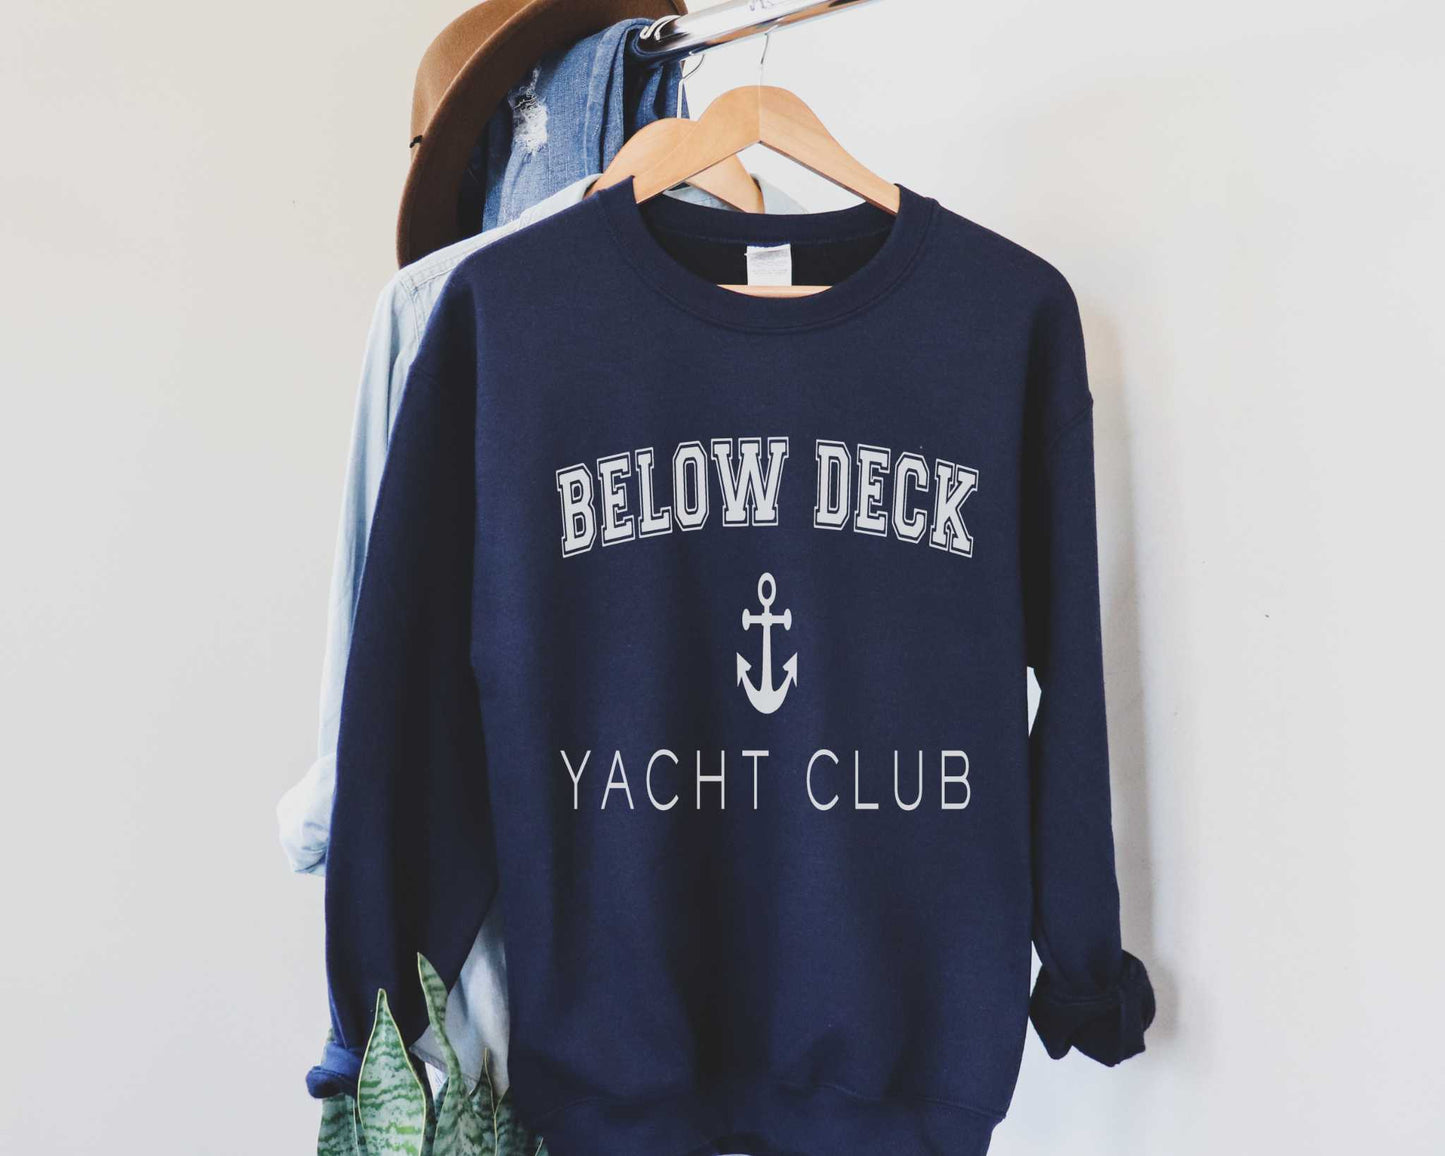 Below Deck Sweatshirt in Navy